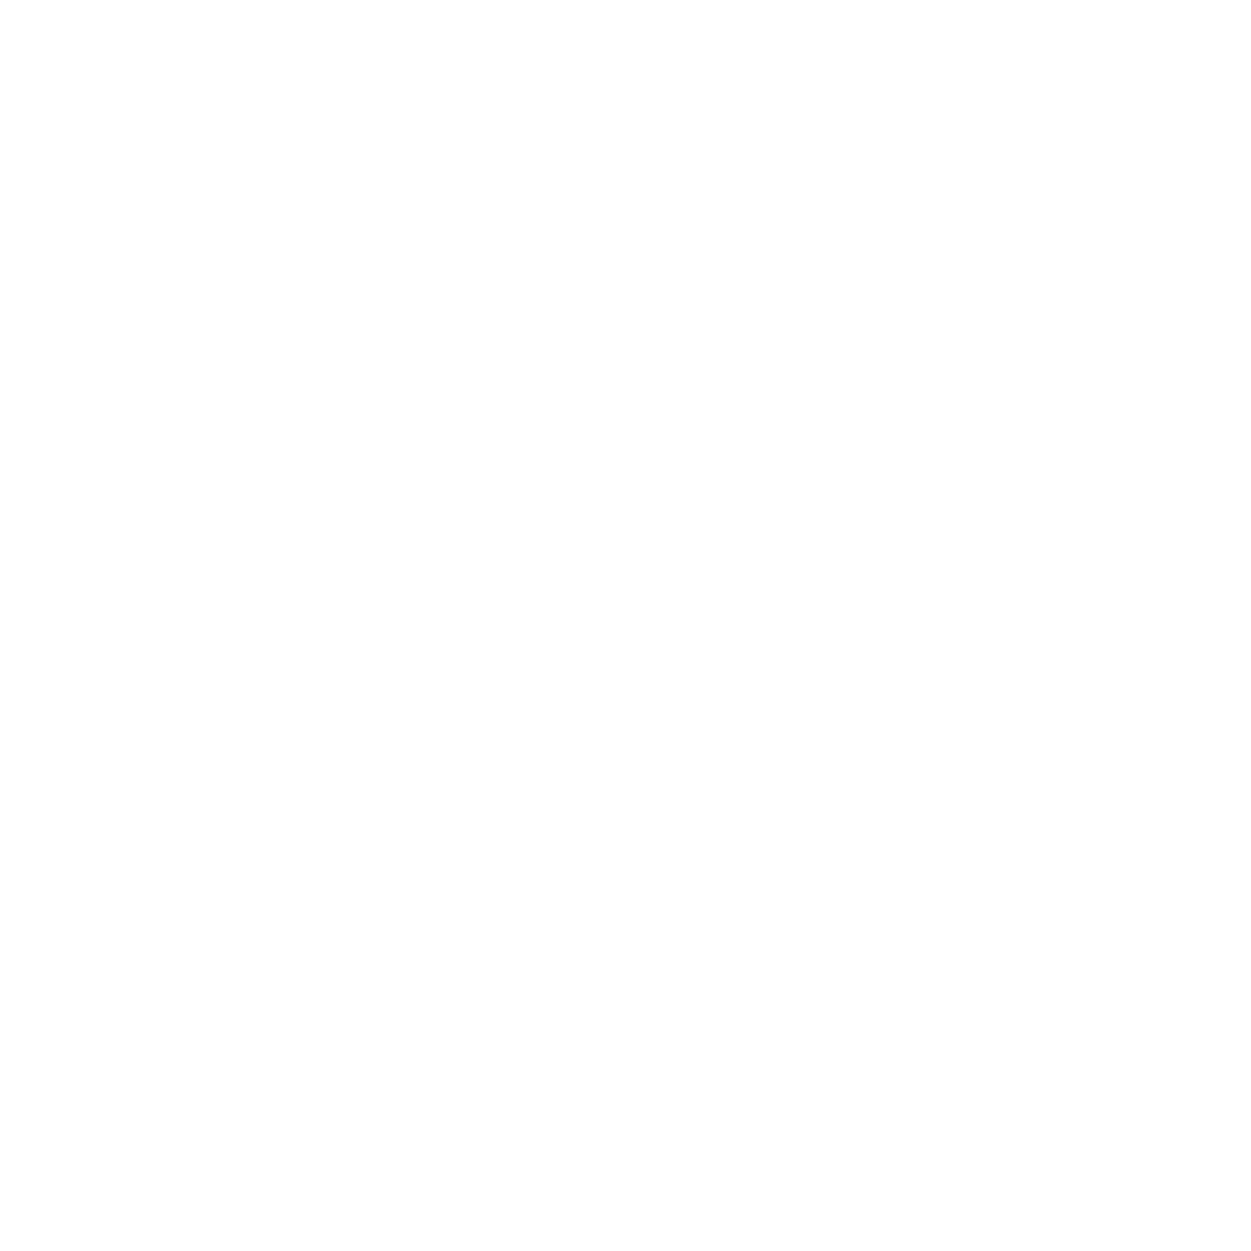 Orbisterramedia.com logo transparent background